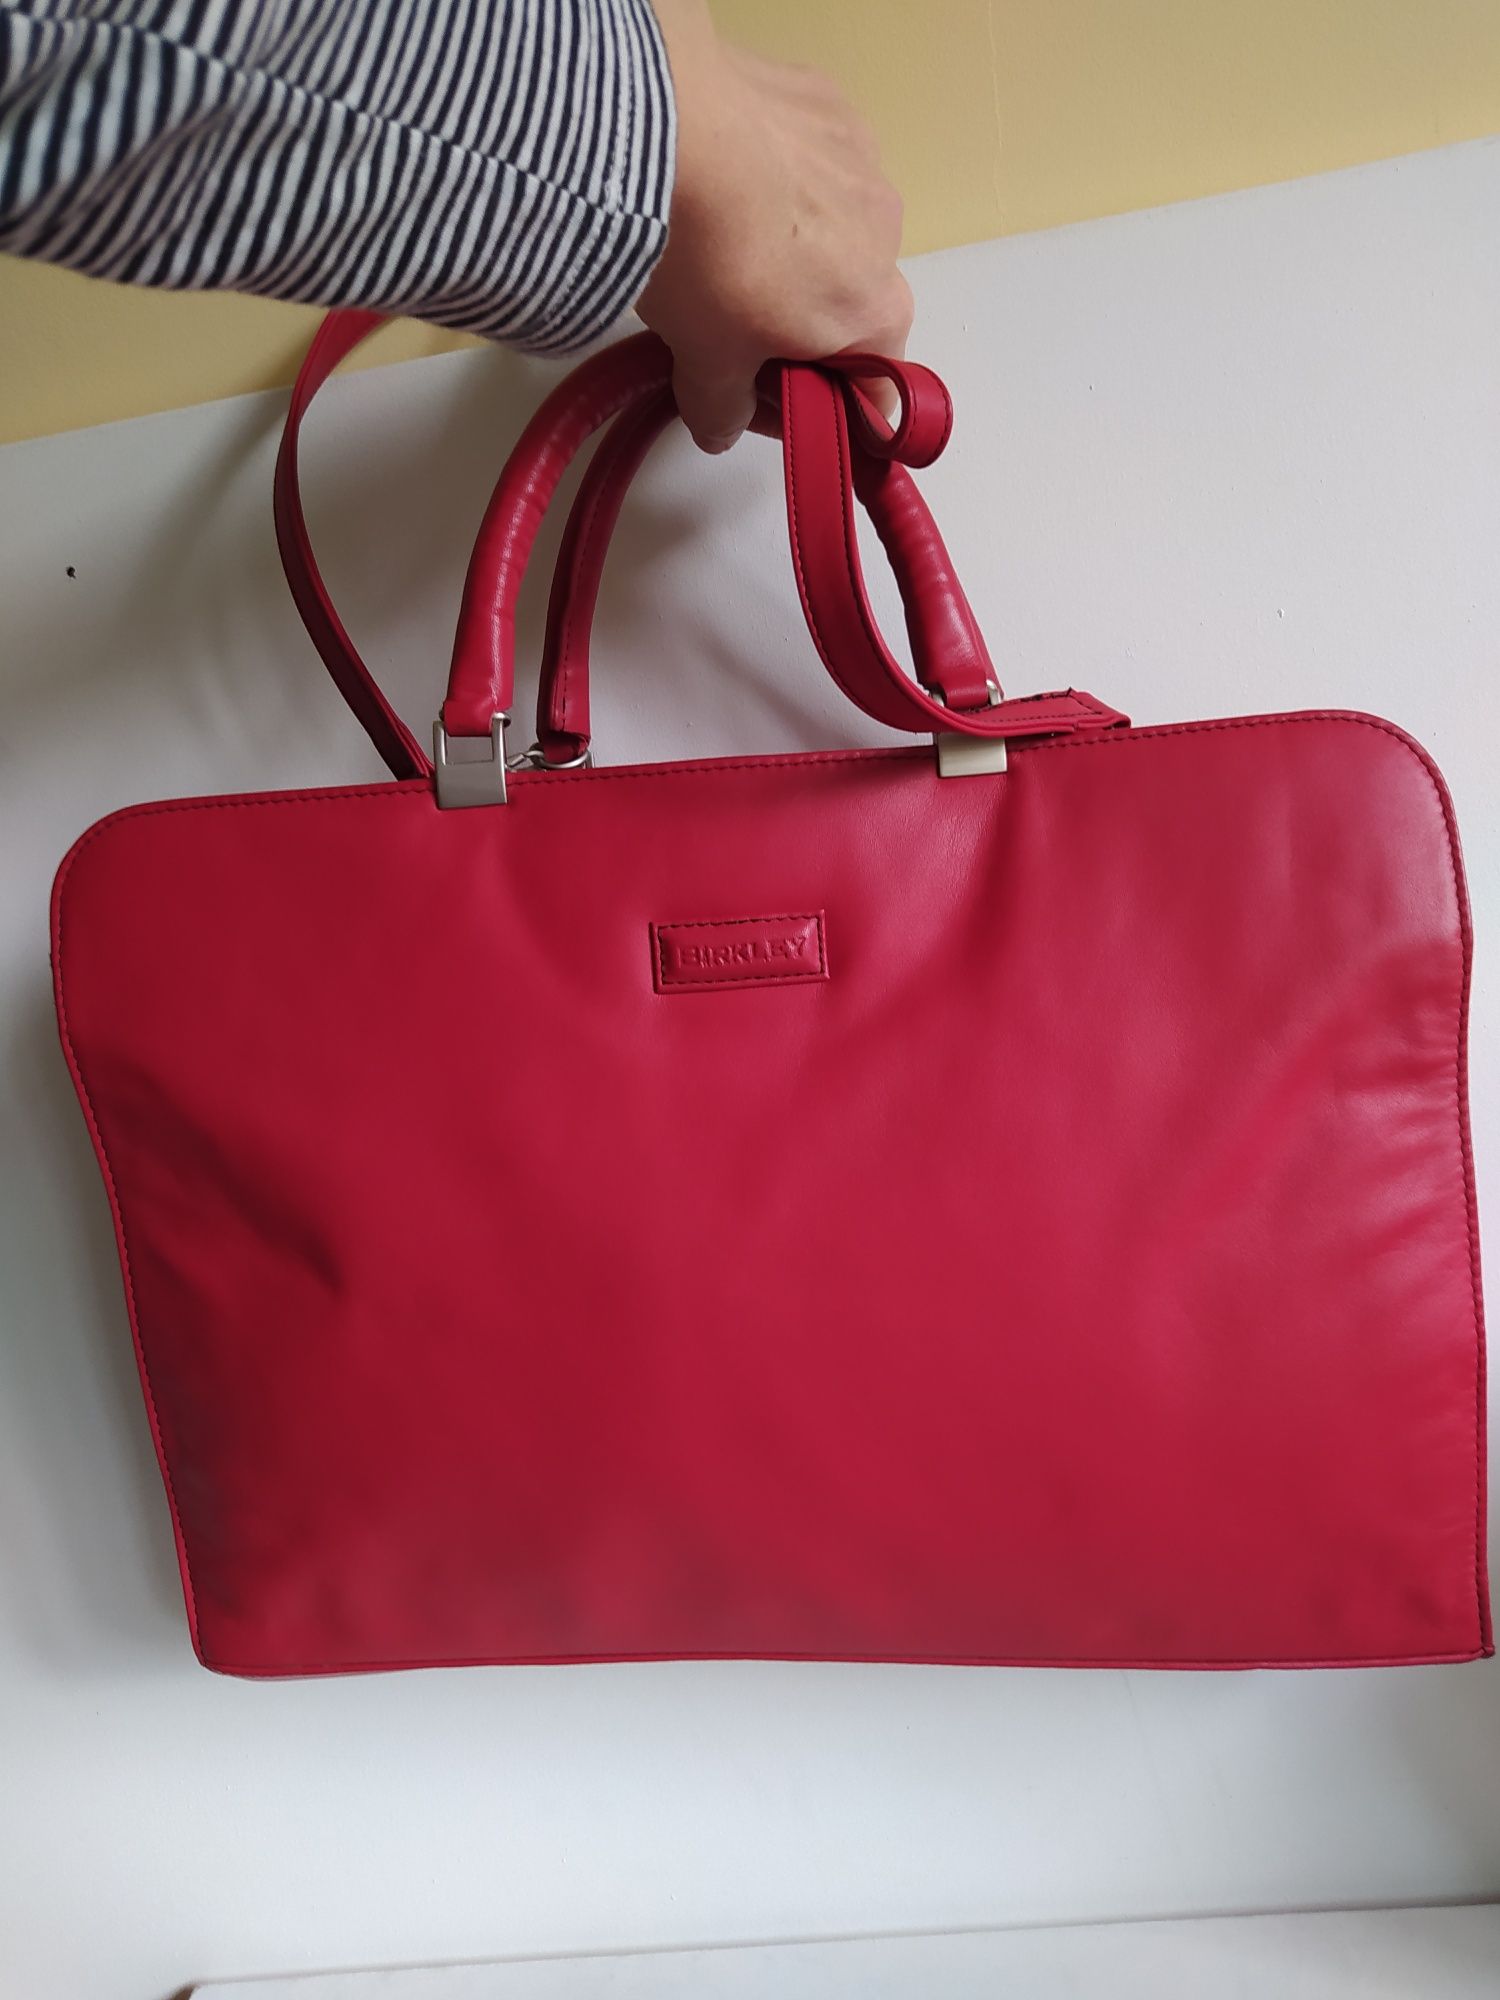 Сумка портфель красный матовый кожаный новый бренд.   BIRKLEY.